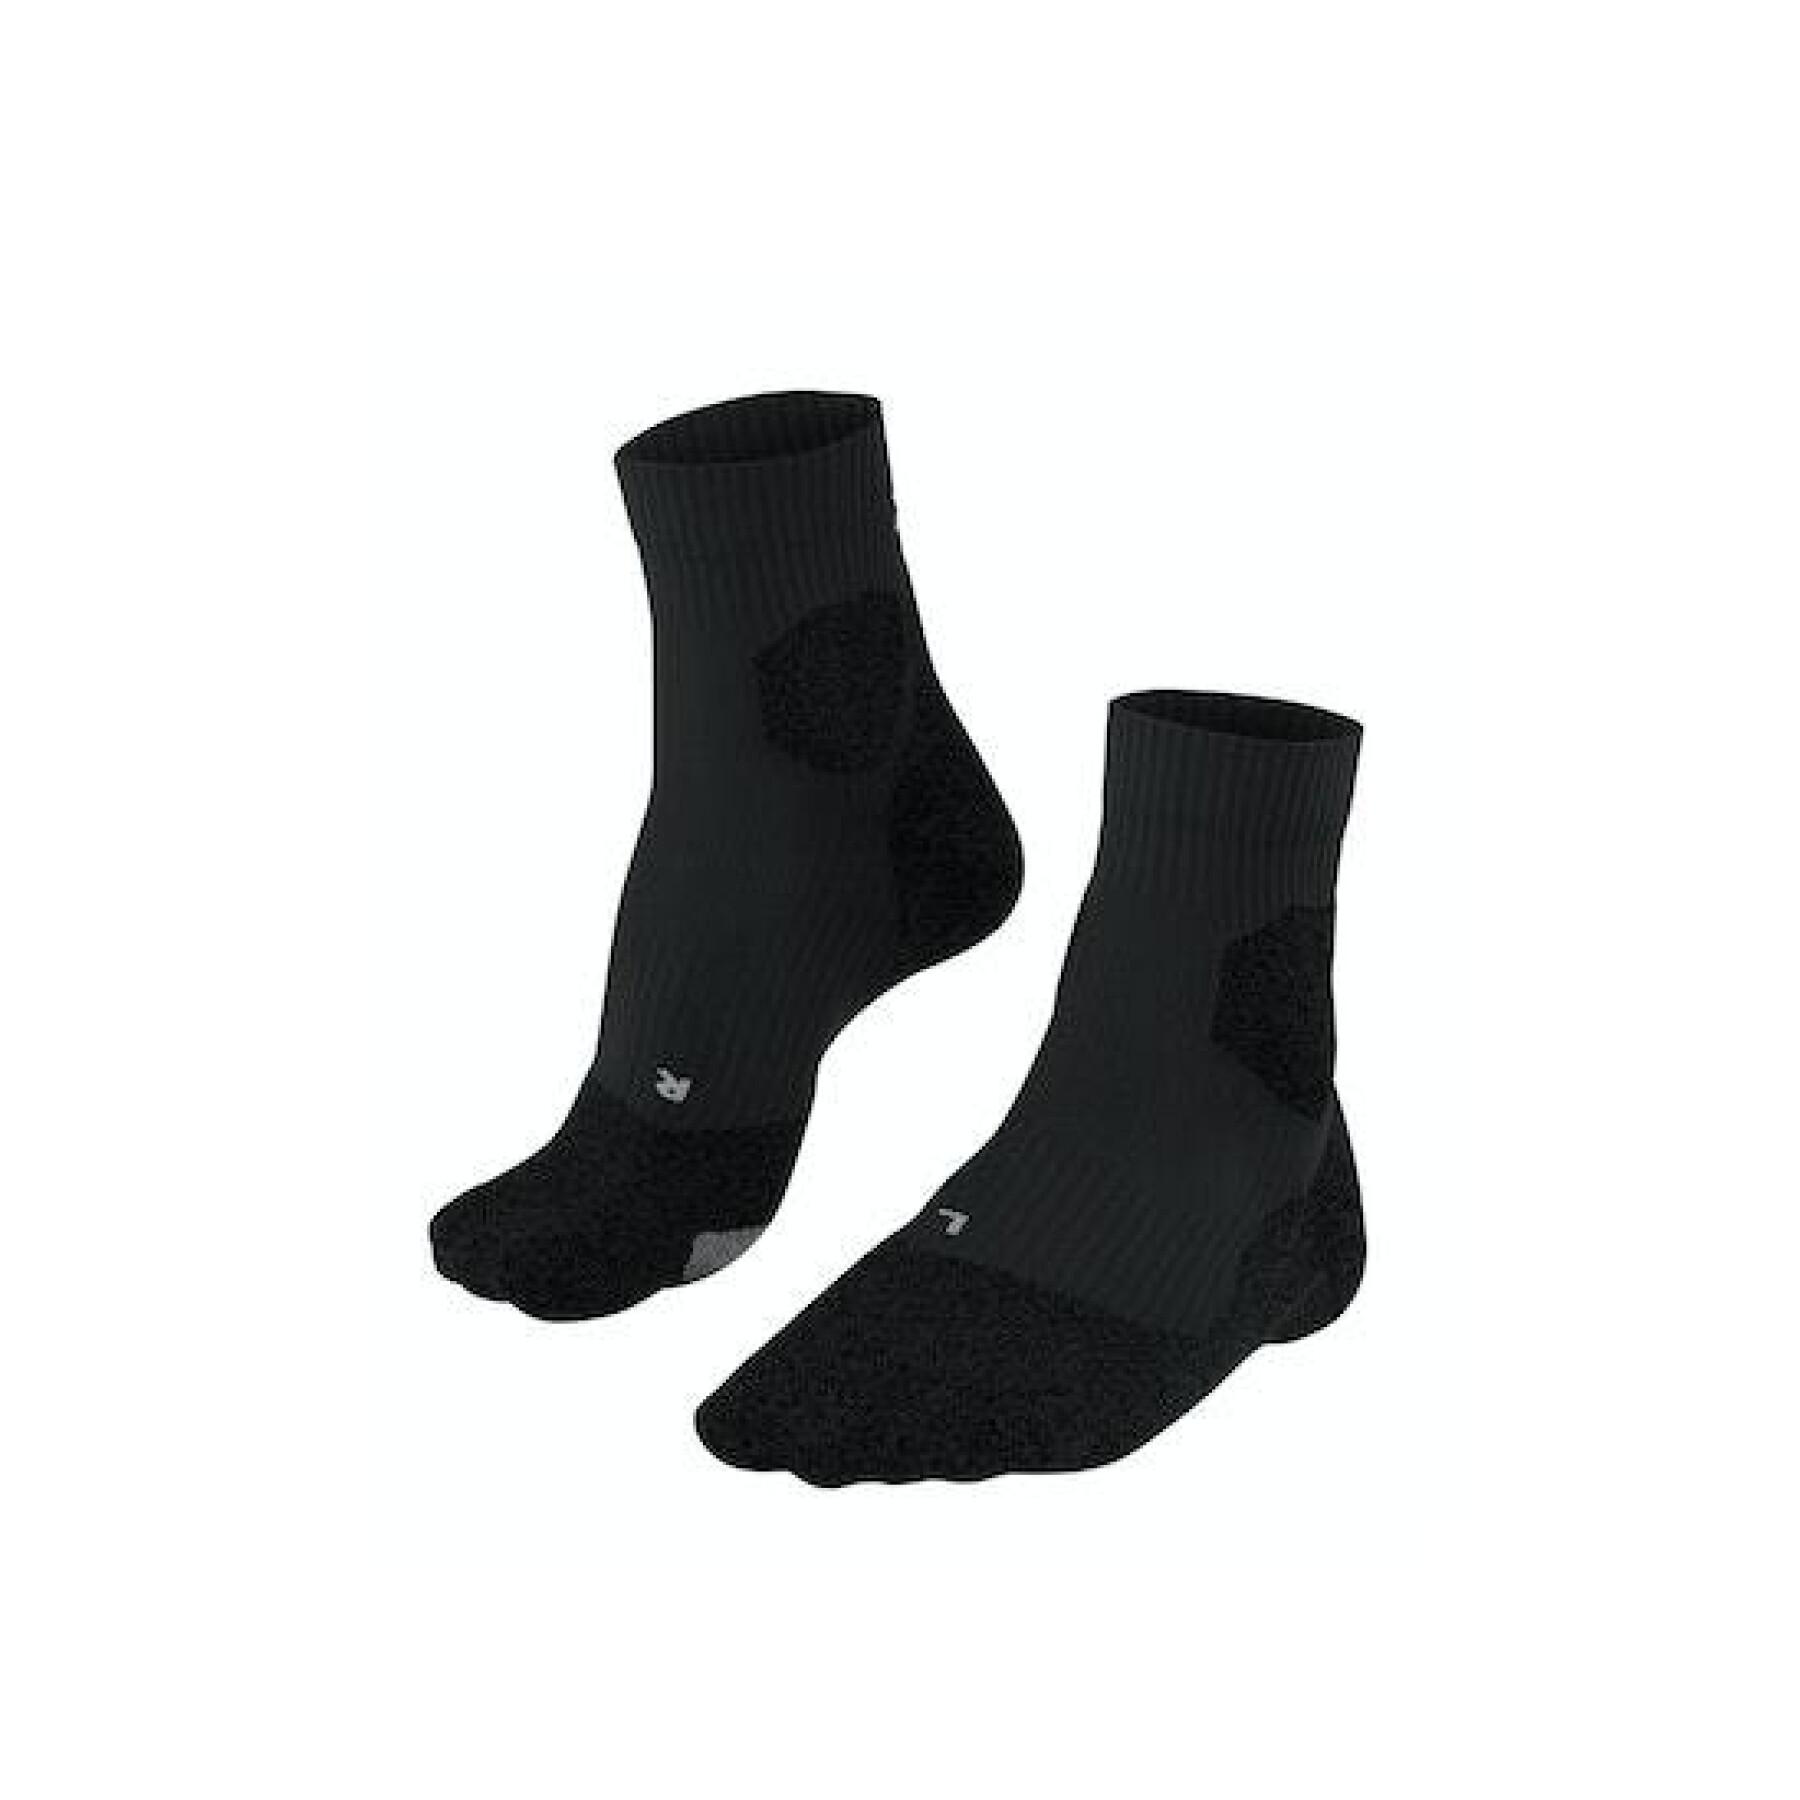 Socks Falke RU Trail Grip - Socks - Men's wear - Handball wear